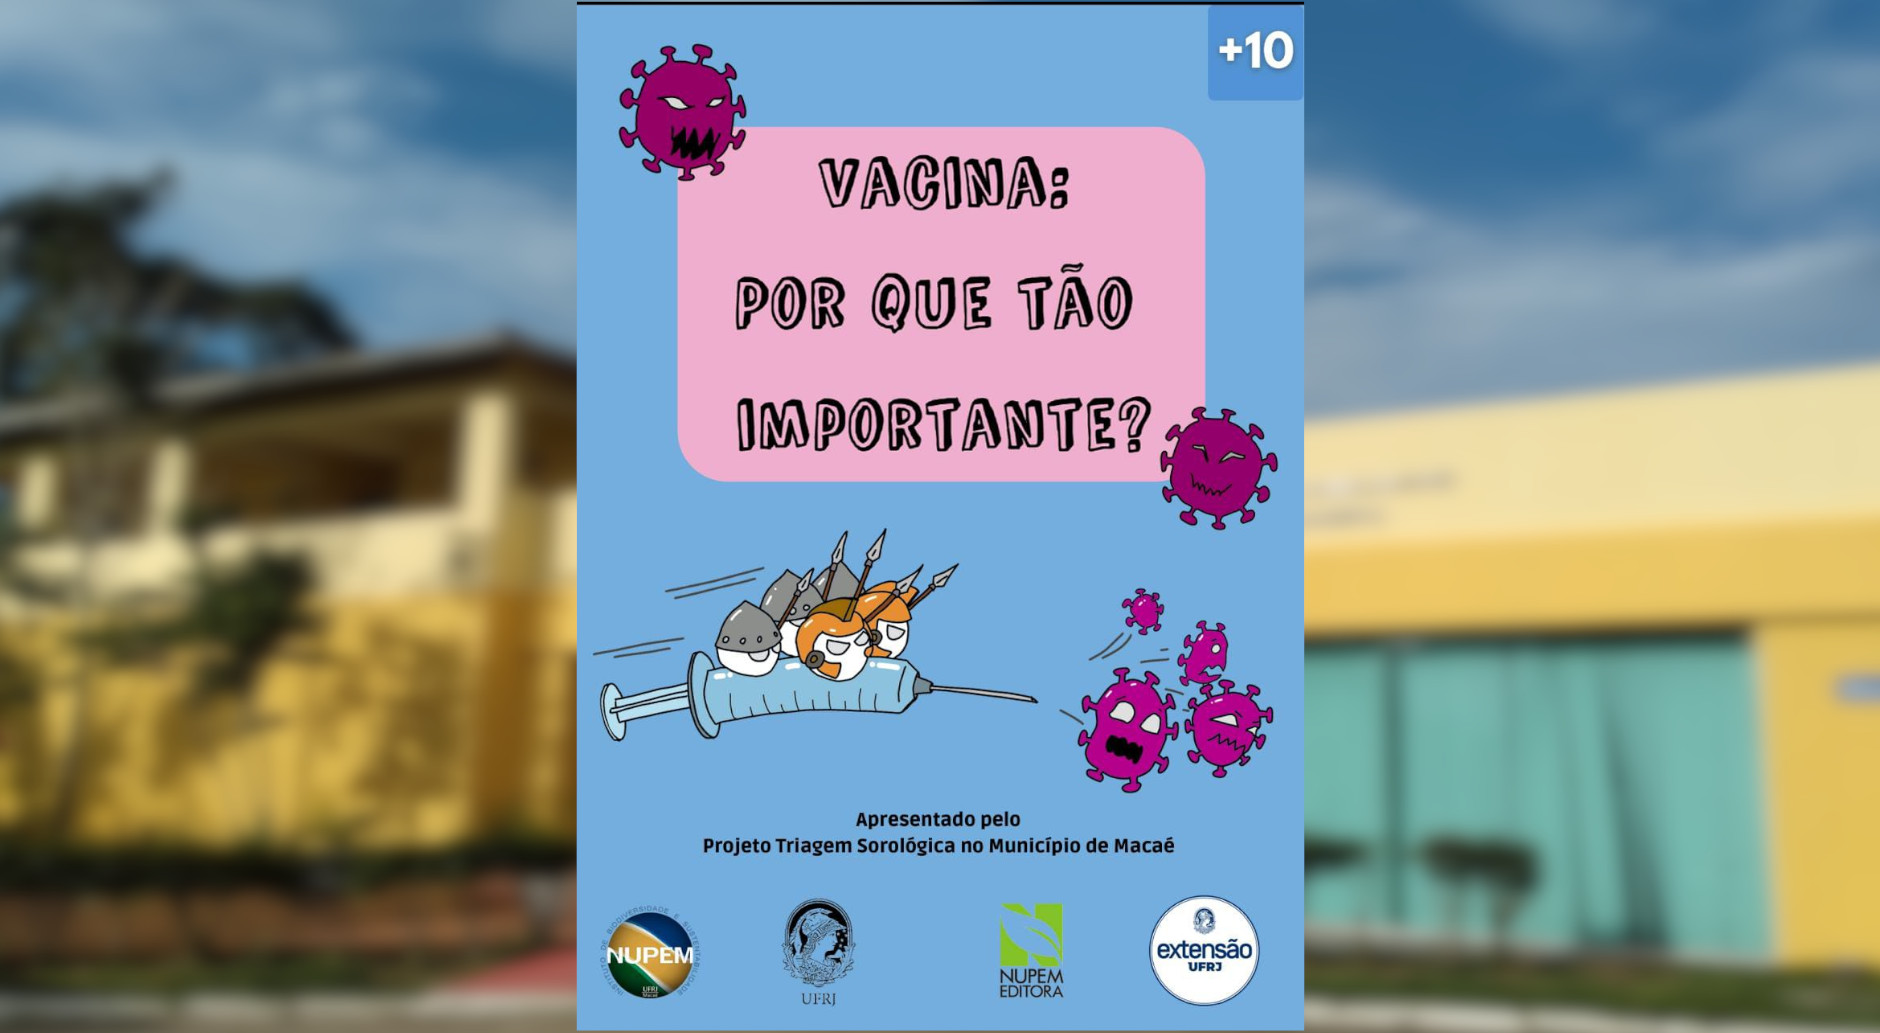 Você está visualizando atualmente O projeto triagem sorológica do município de Macaé apresenta uma divertida história em quadrinhos: Vacina, por que é tão importante?